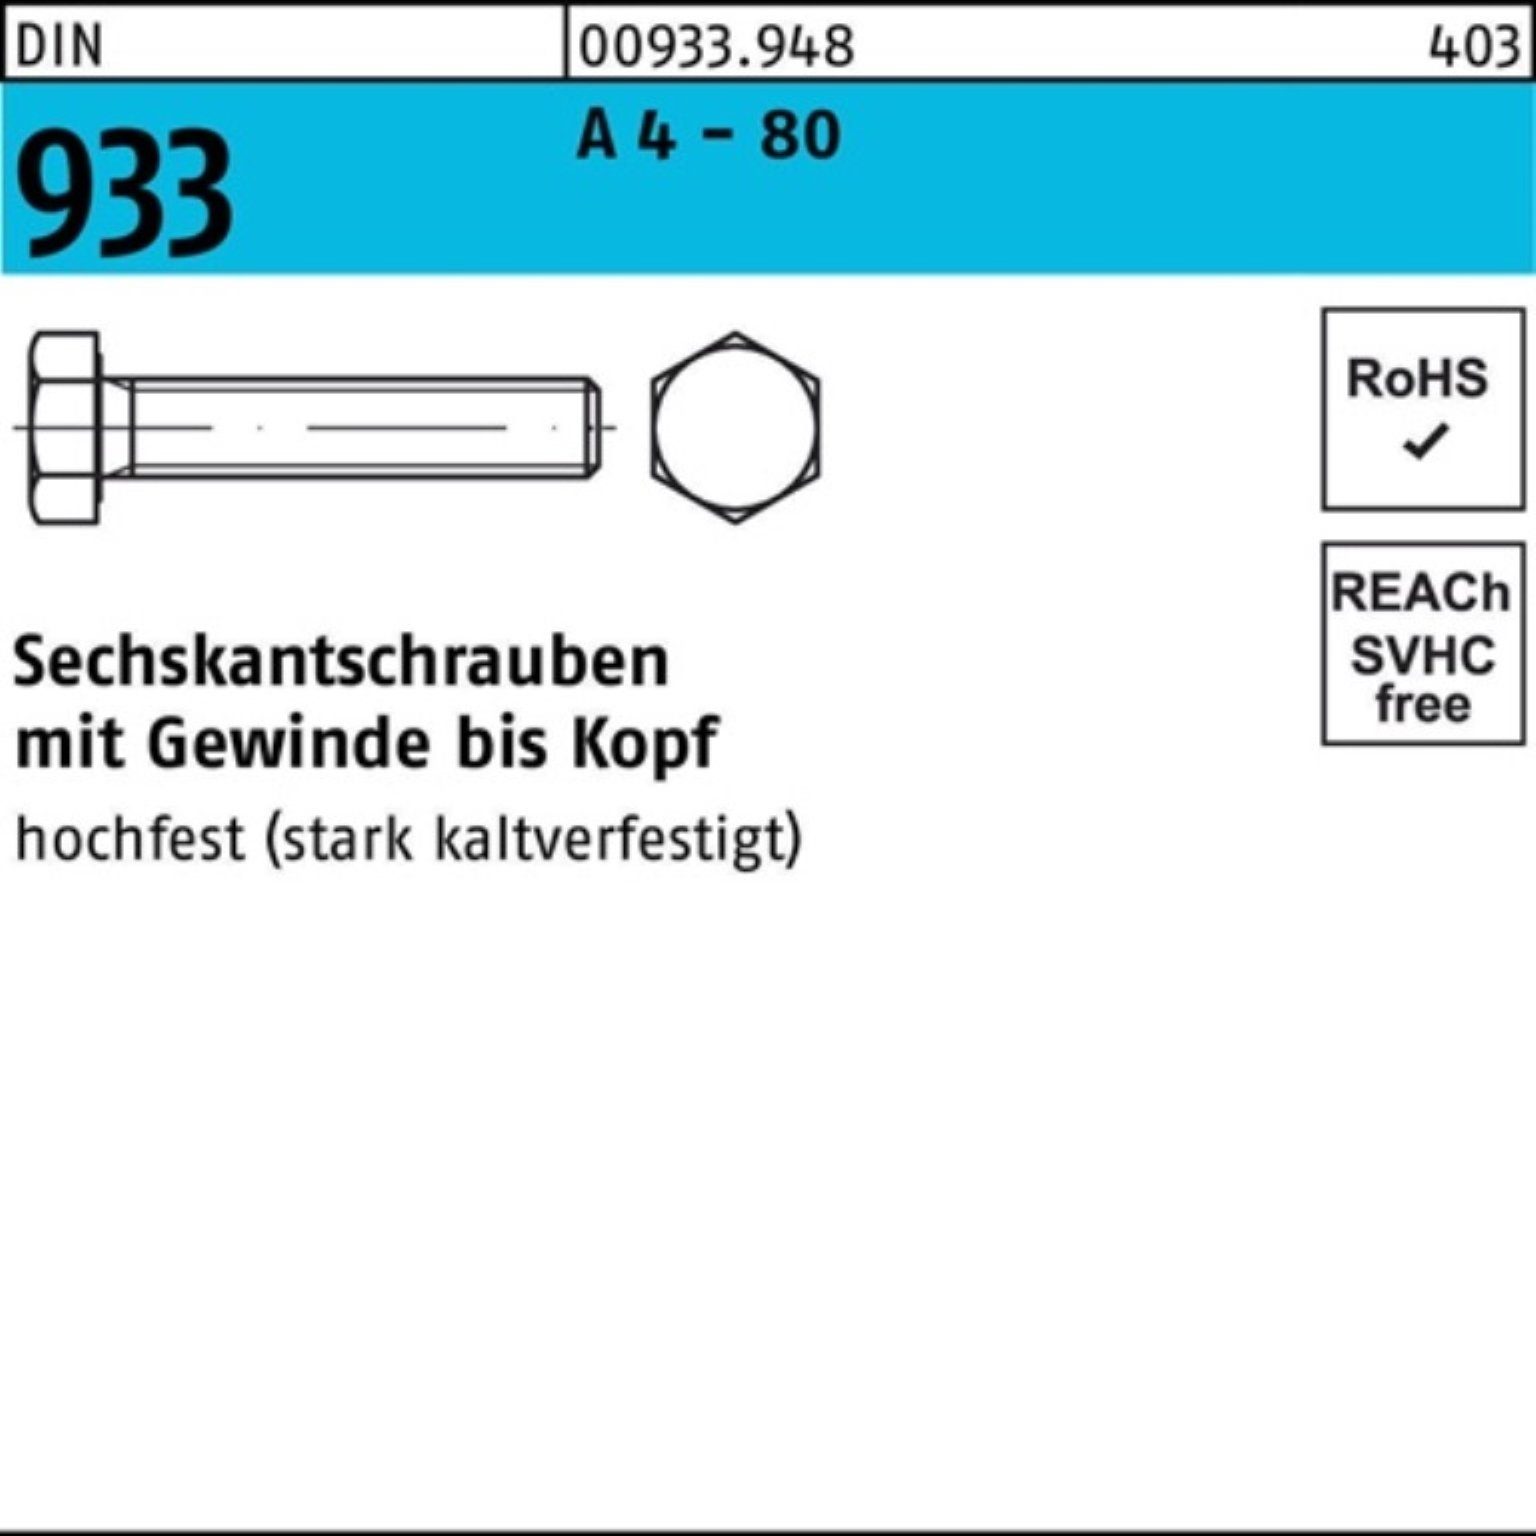 Reyher Sechskantschraube 100er Pack Sechskantschraube DIN 933 VG M16x 25 A 4 - 80 50 Stück DIN